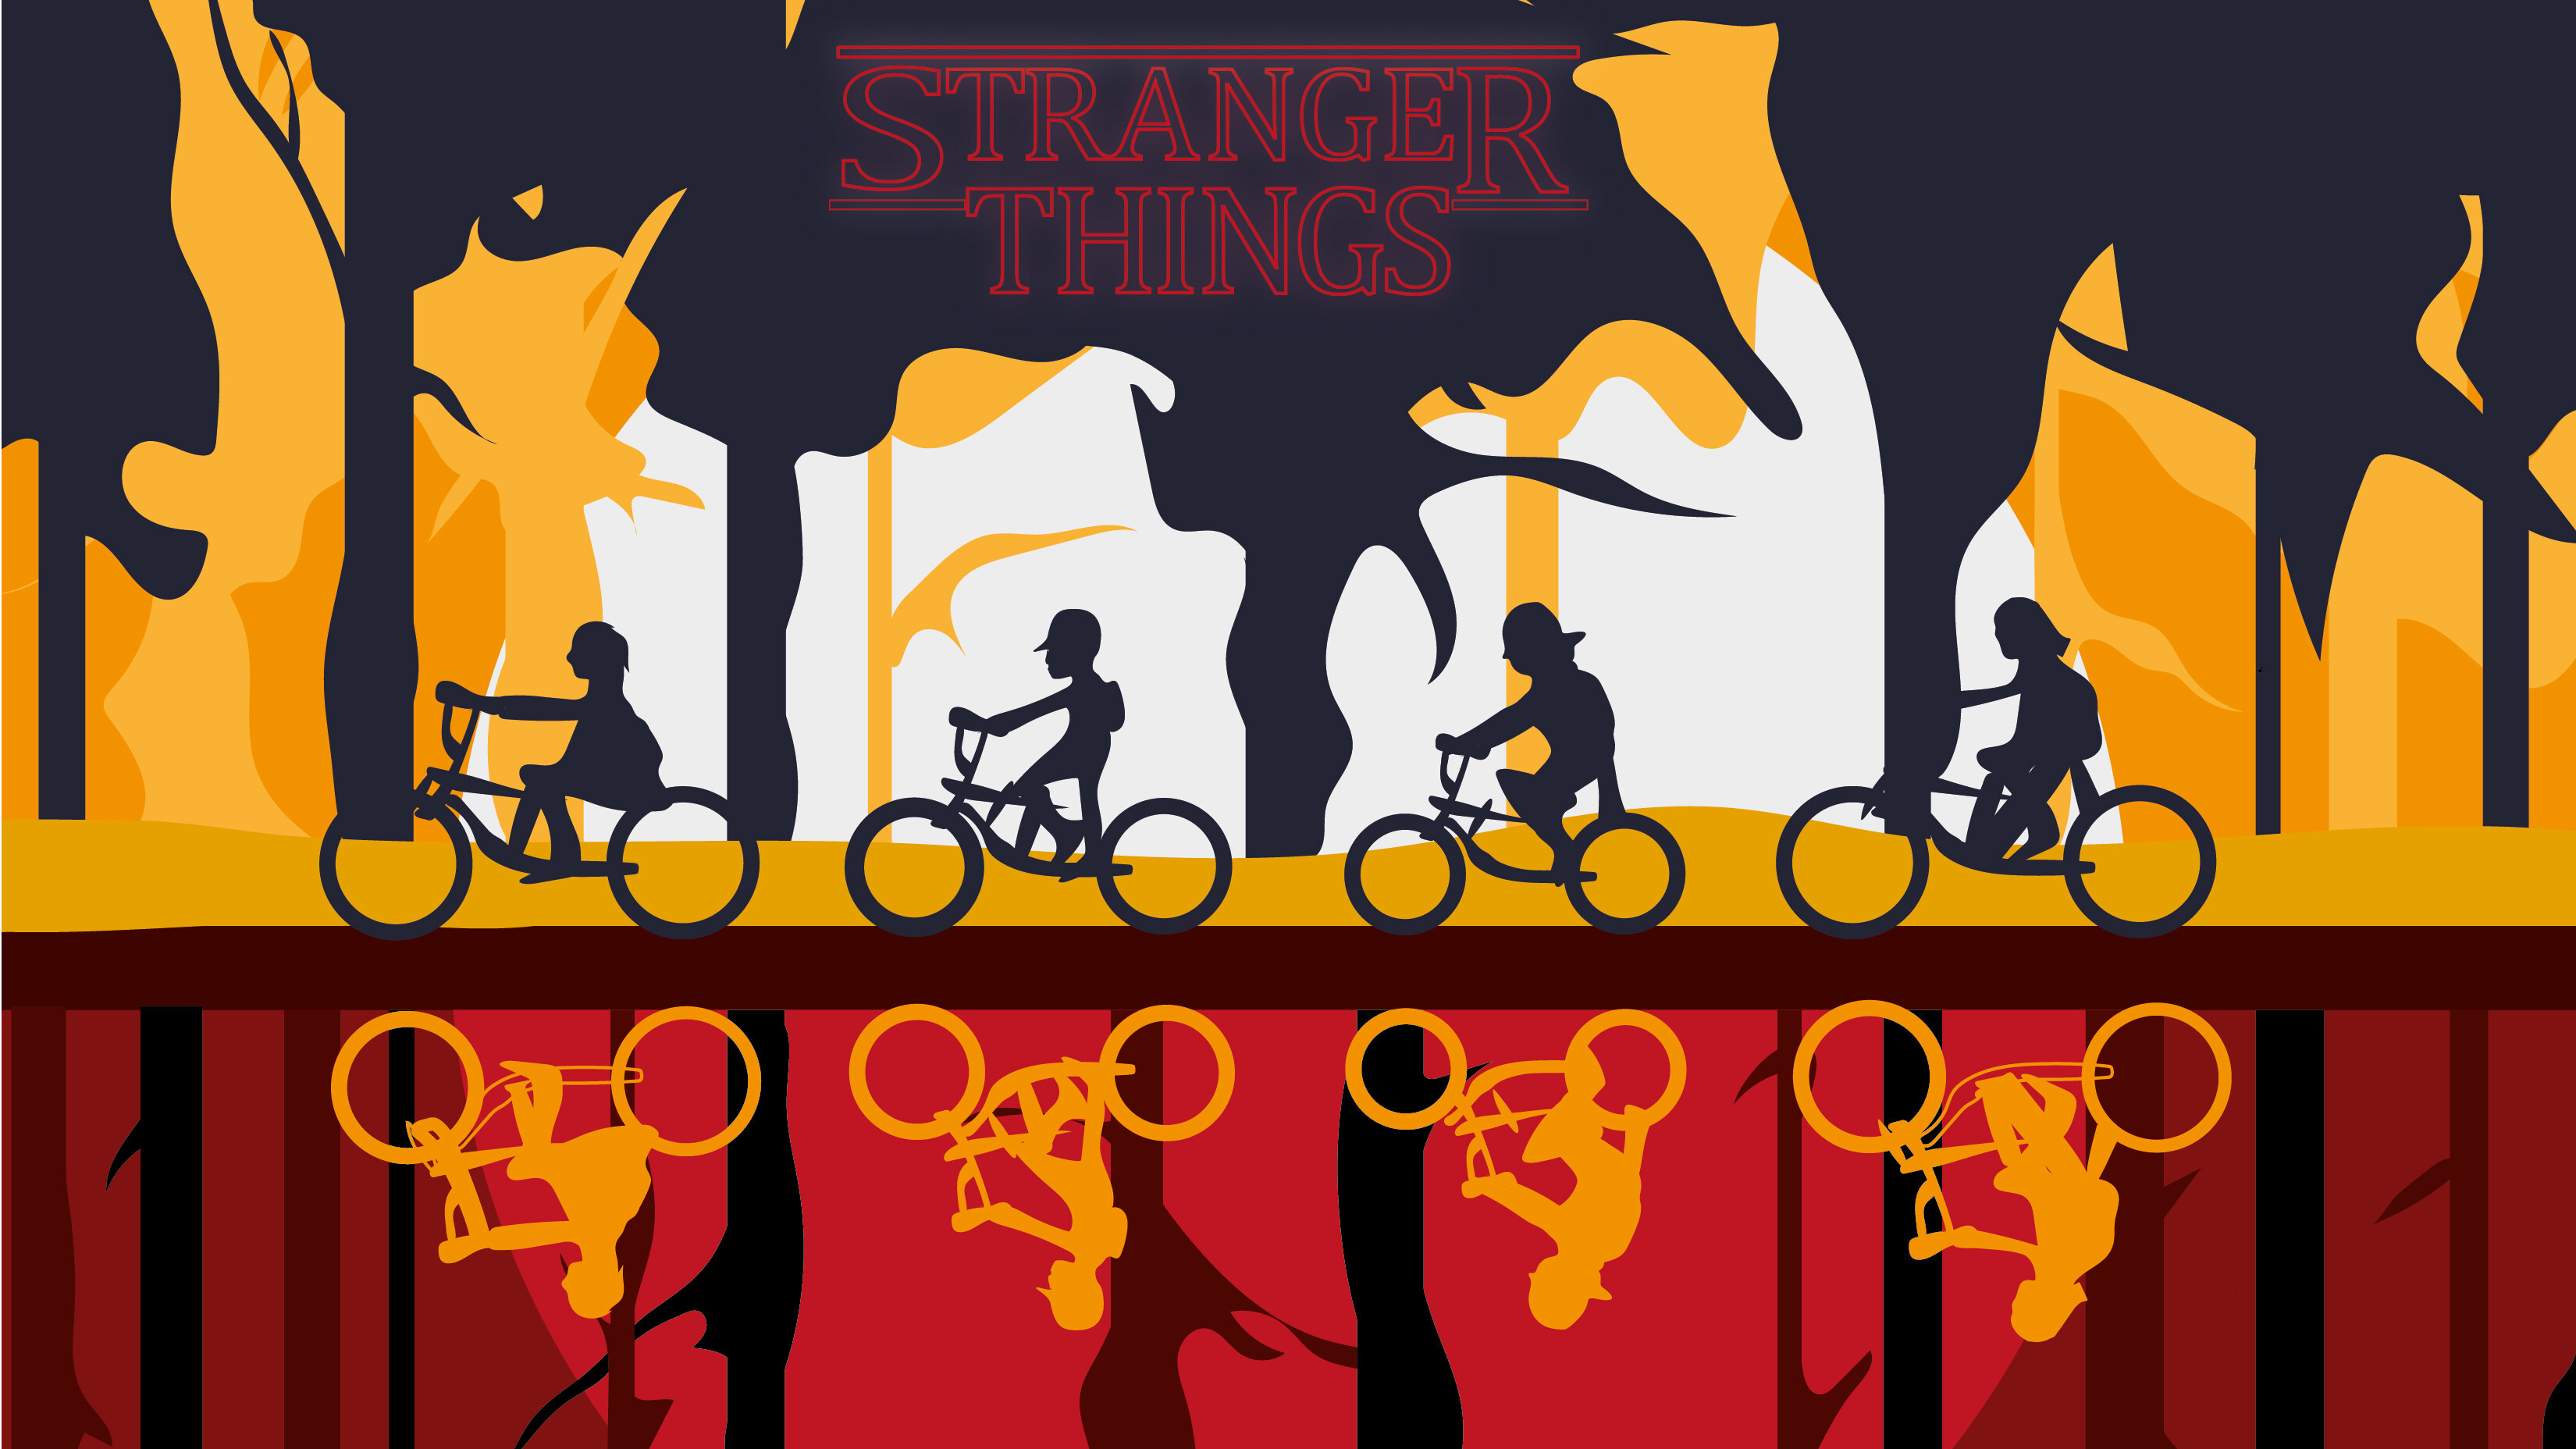 Stranger Things: Season 3 was released worldwide on Netflix on July 4, 2019. 3300x1860 HD Wallpaper.